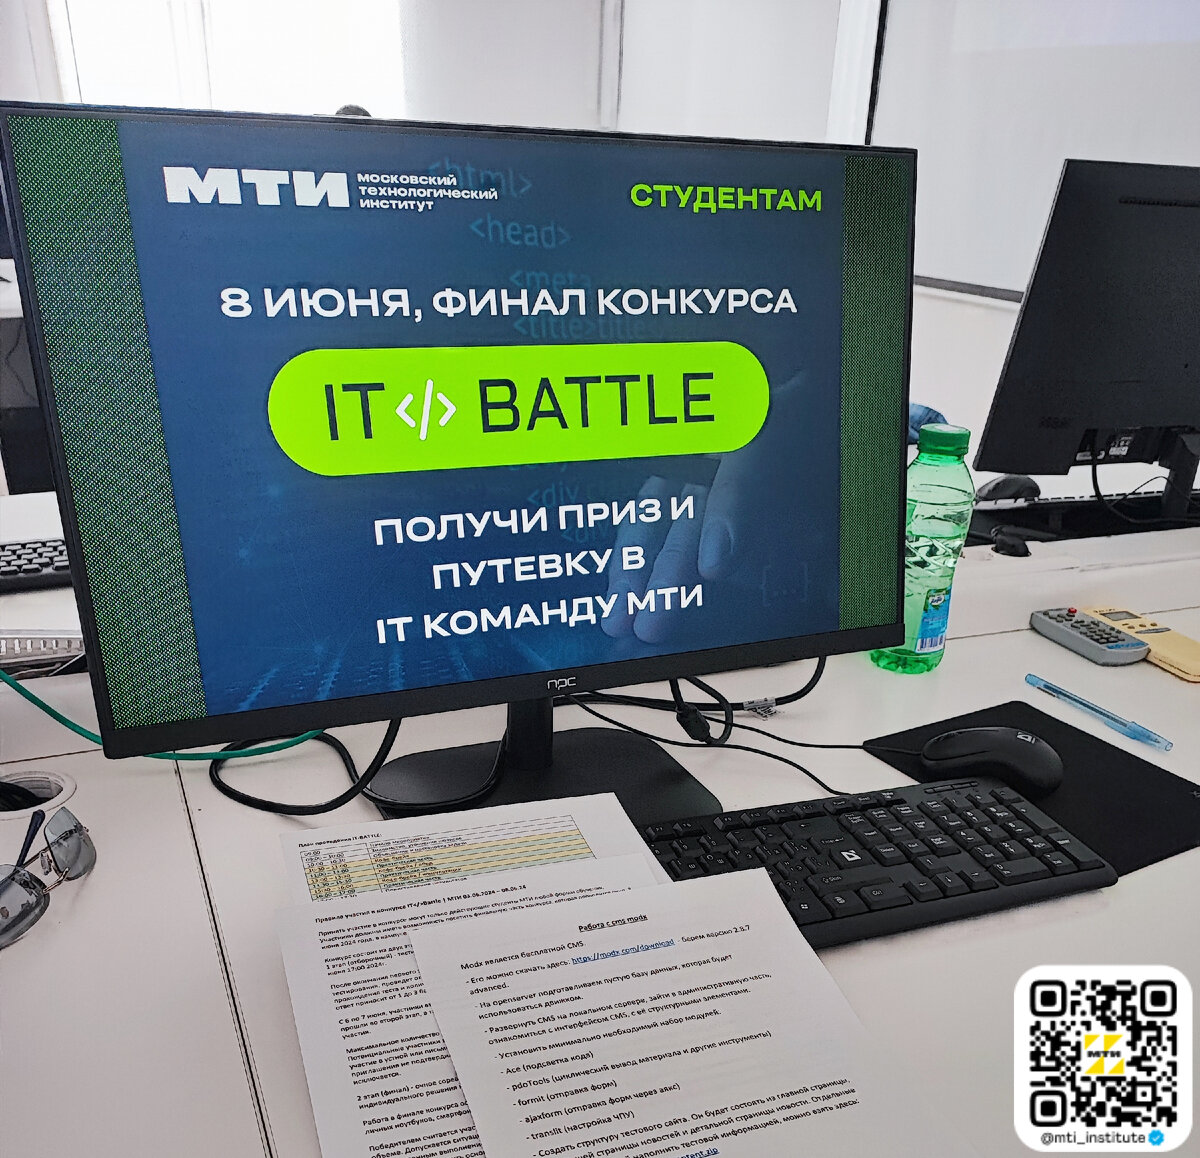 8 июня в кампусе МТИ прошел финал соревнования с «говорящим» названием «IT BATTLE». Это IT-конкурс, проходивший в 2 этапа. Первый этап — тестирования на странице нашего сайта.